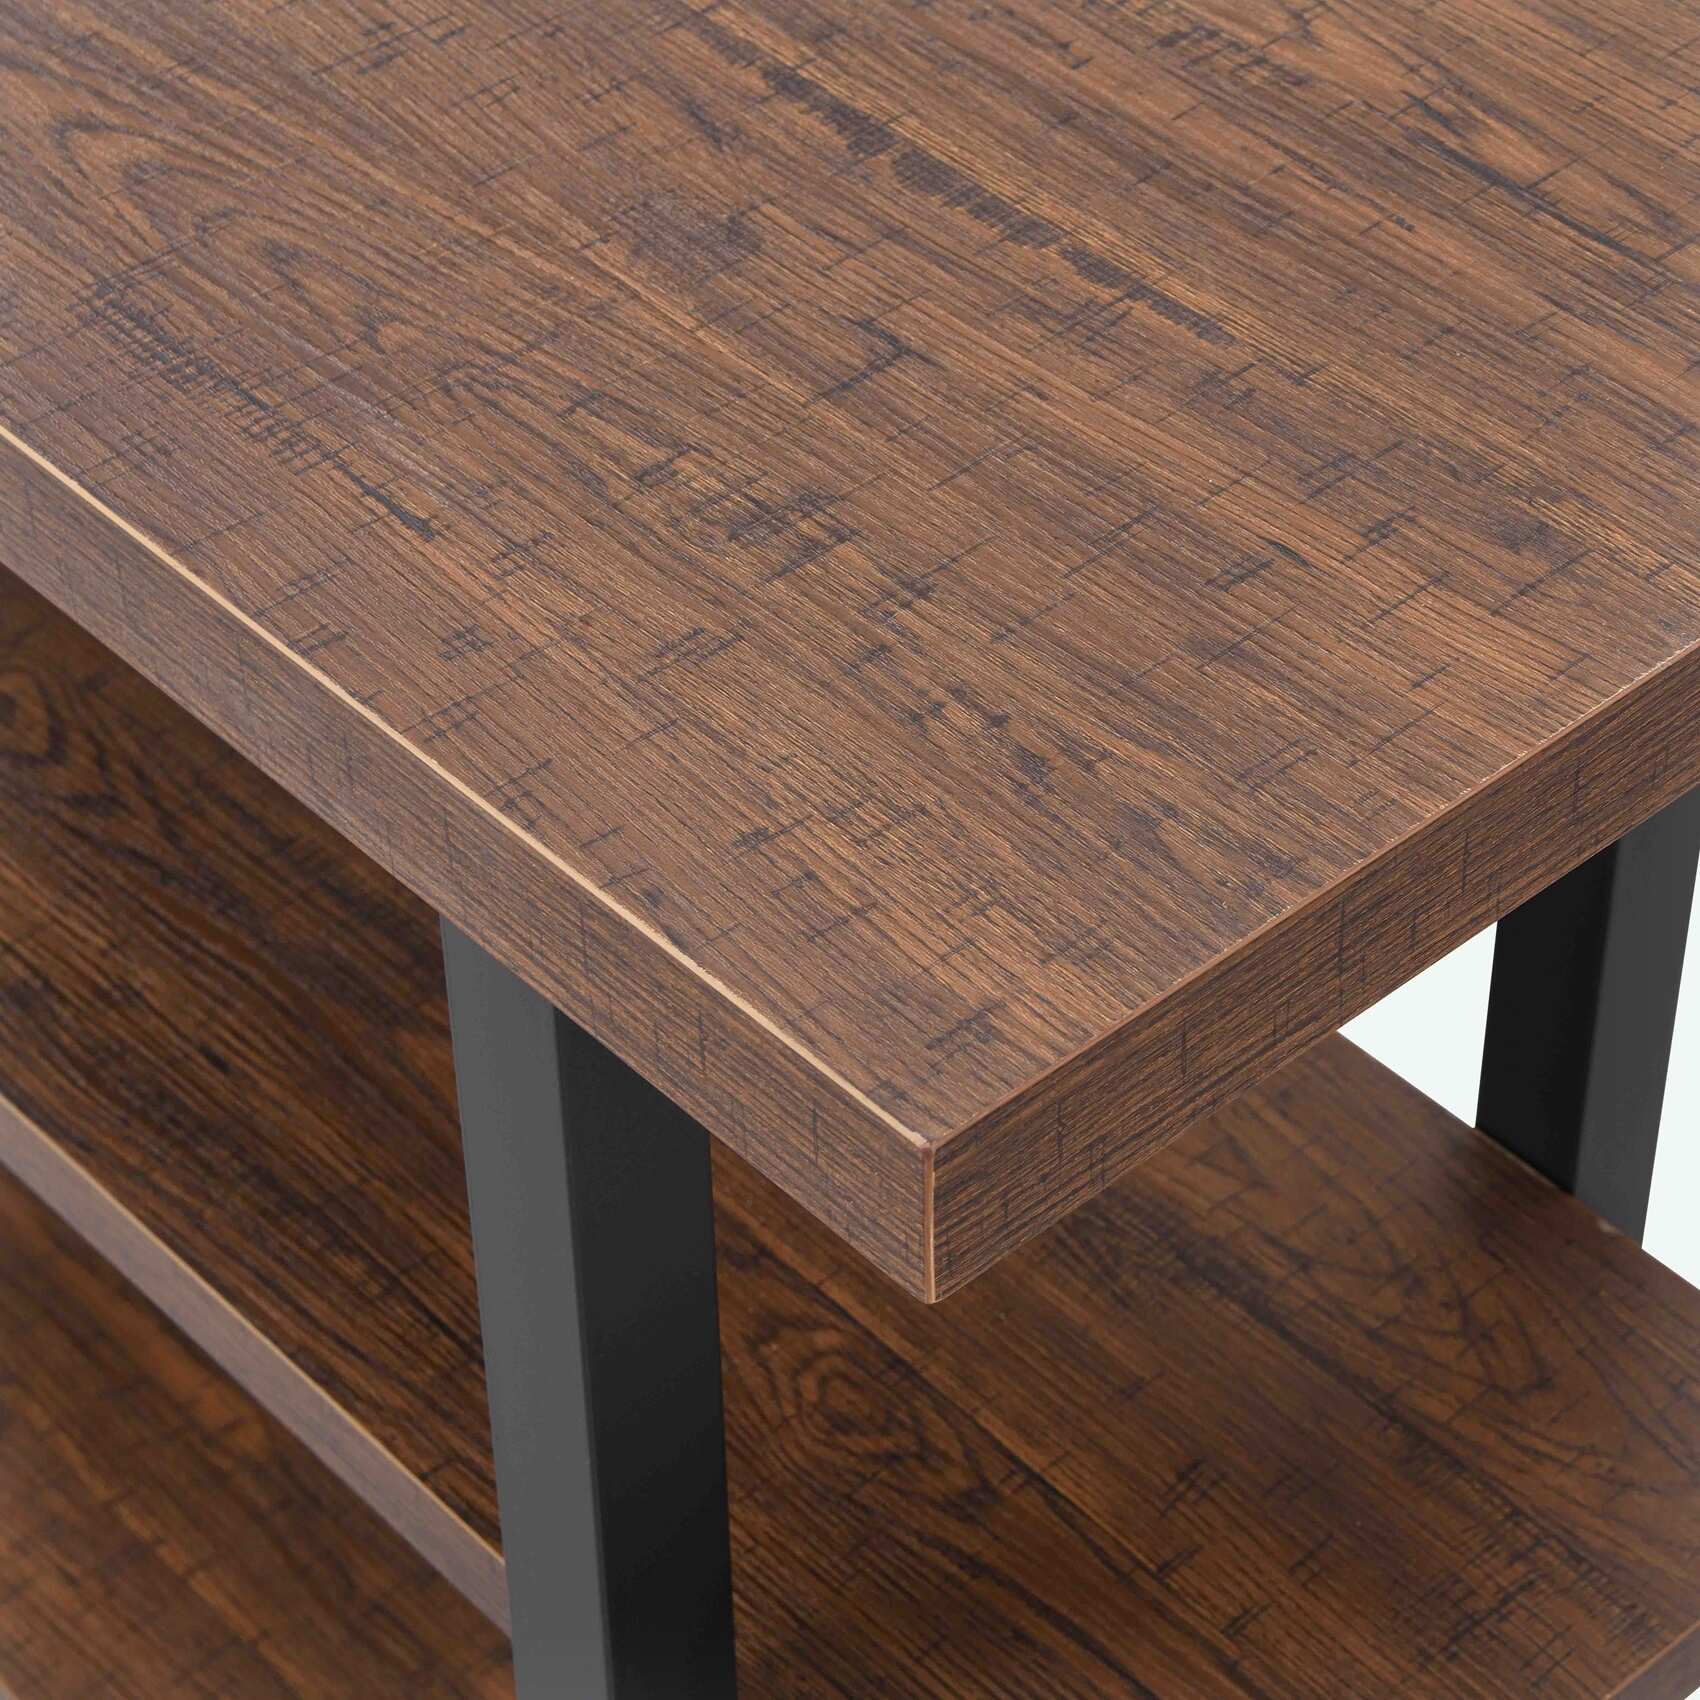 3-Tier Wood and Metal Sofa Table